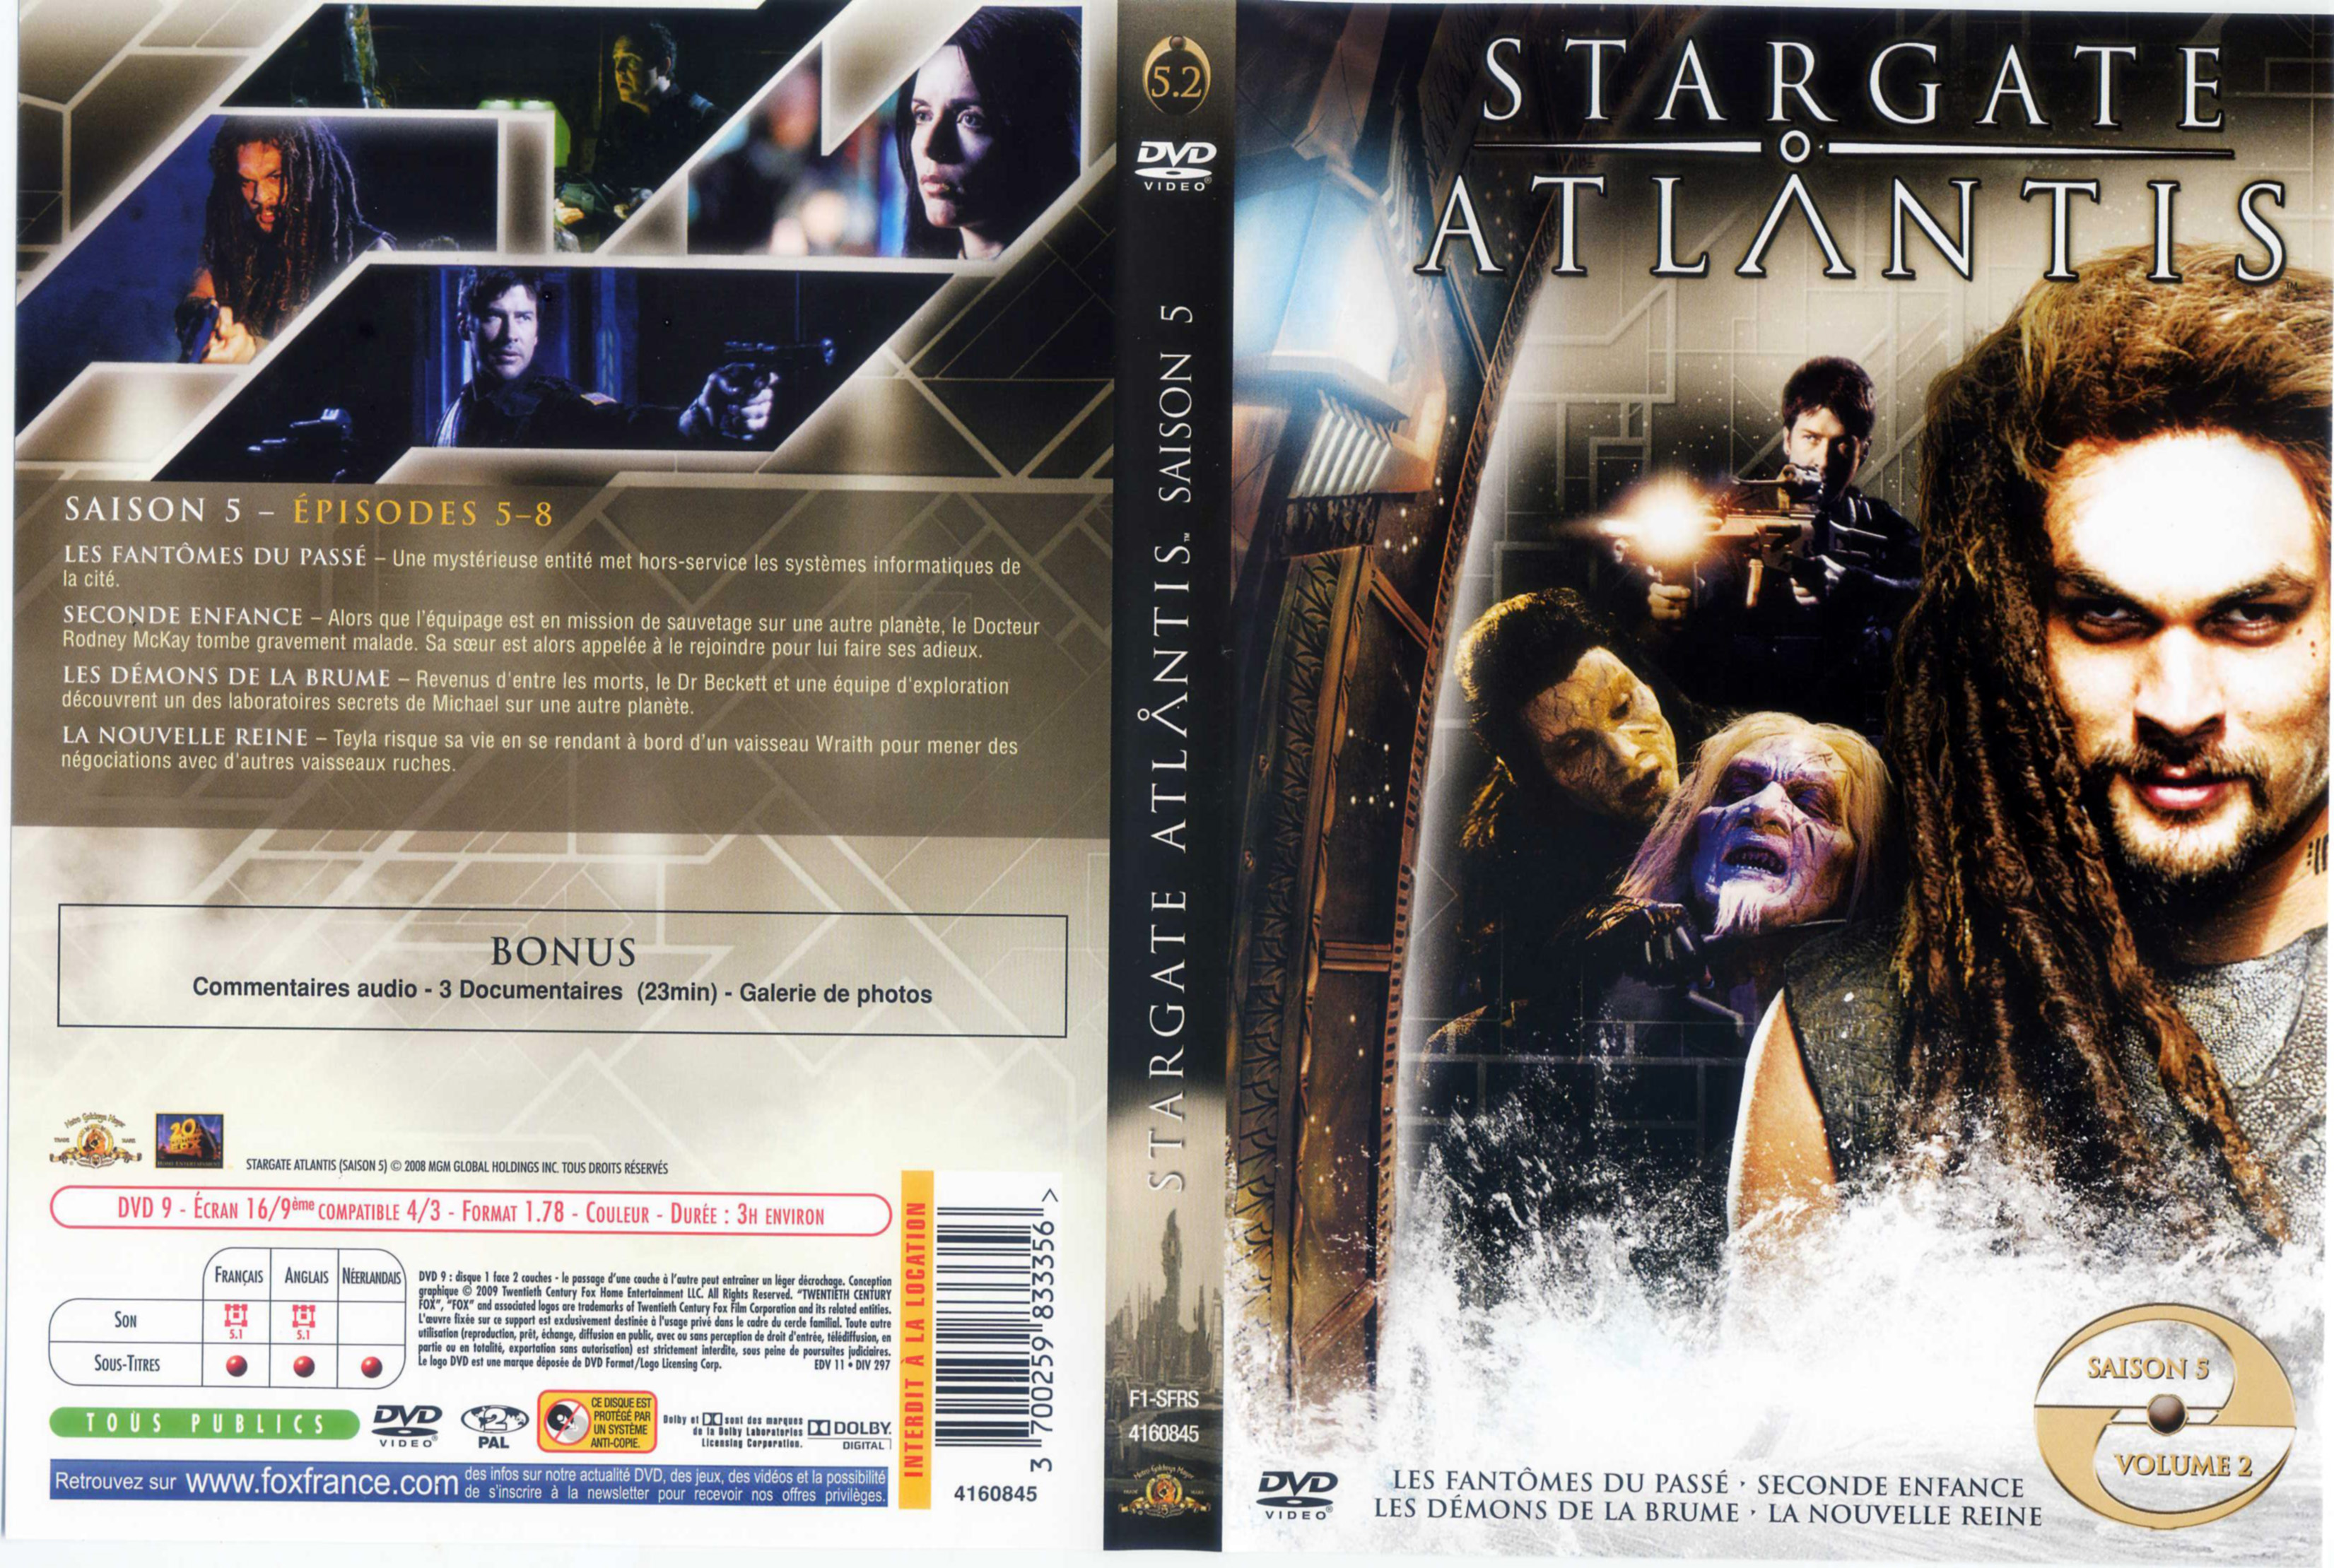 Jaquette DVD Stargate Atlantis Saison 5 DVD 2